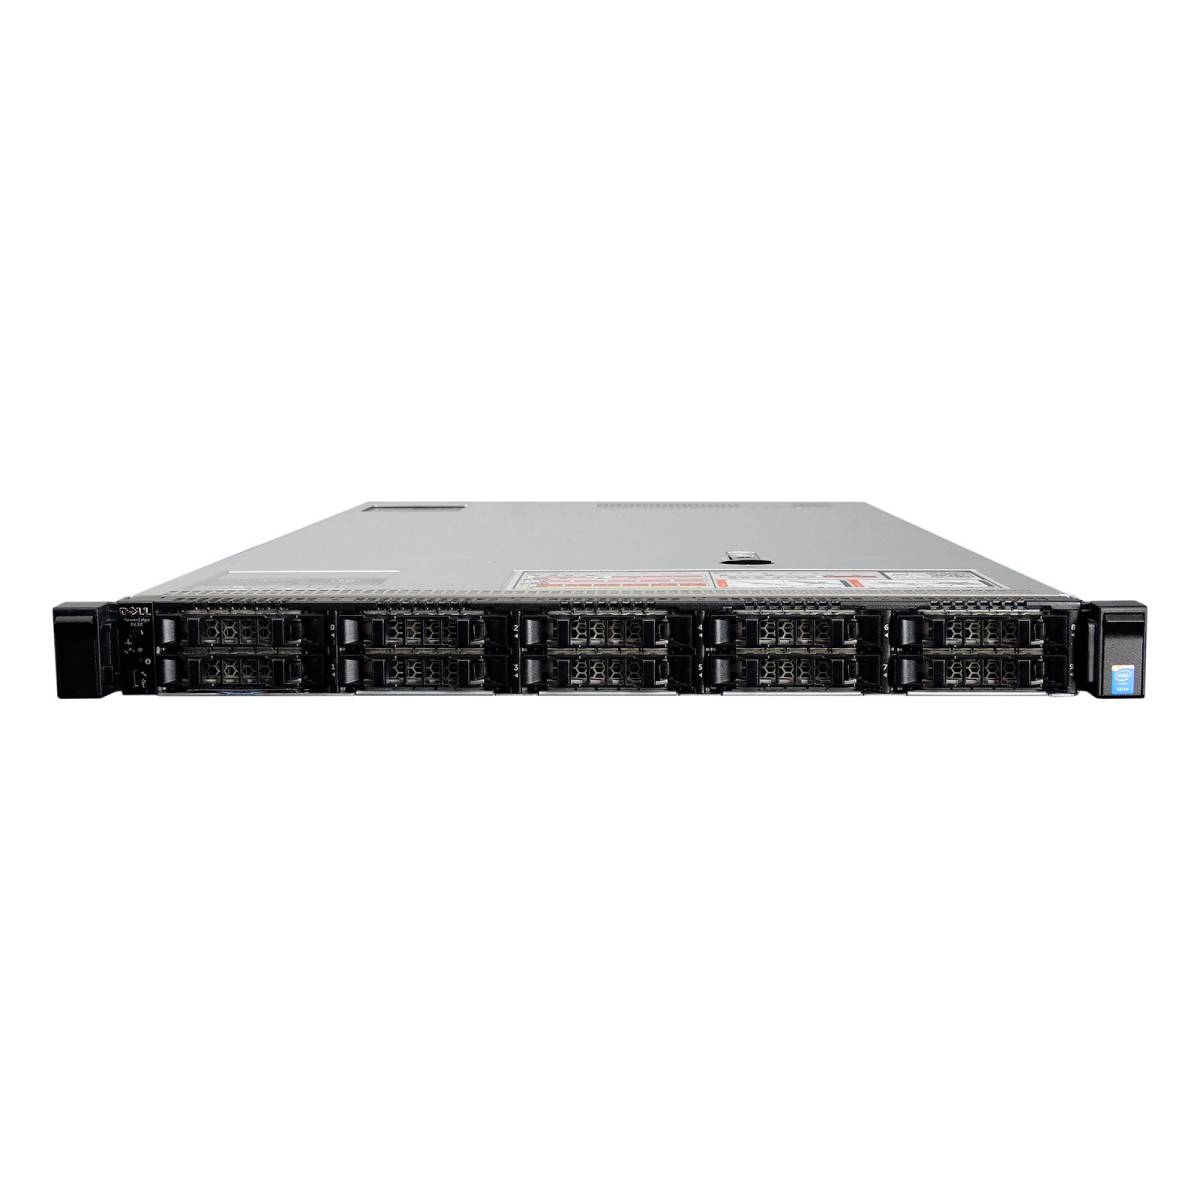 Изображение Сервер DELL PowerEdge R630 Xeon 2x E5-2697Av4 256Gb 2133P DDR4 10x noHDD 2.5", SAS RAID Perc H330, 2*PSU 495W